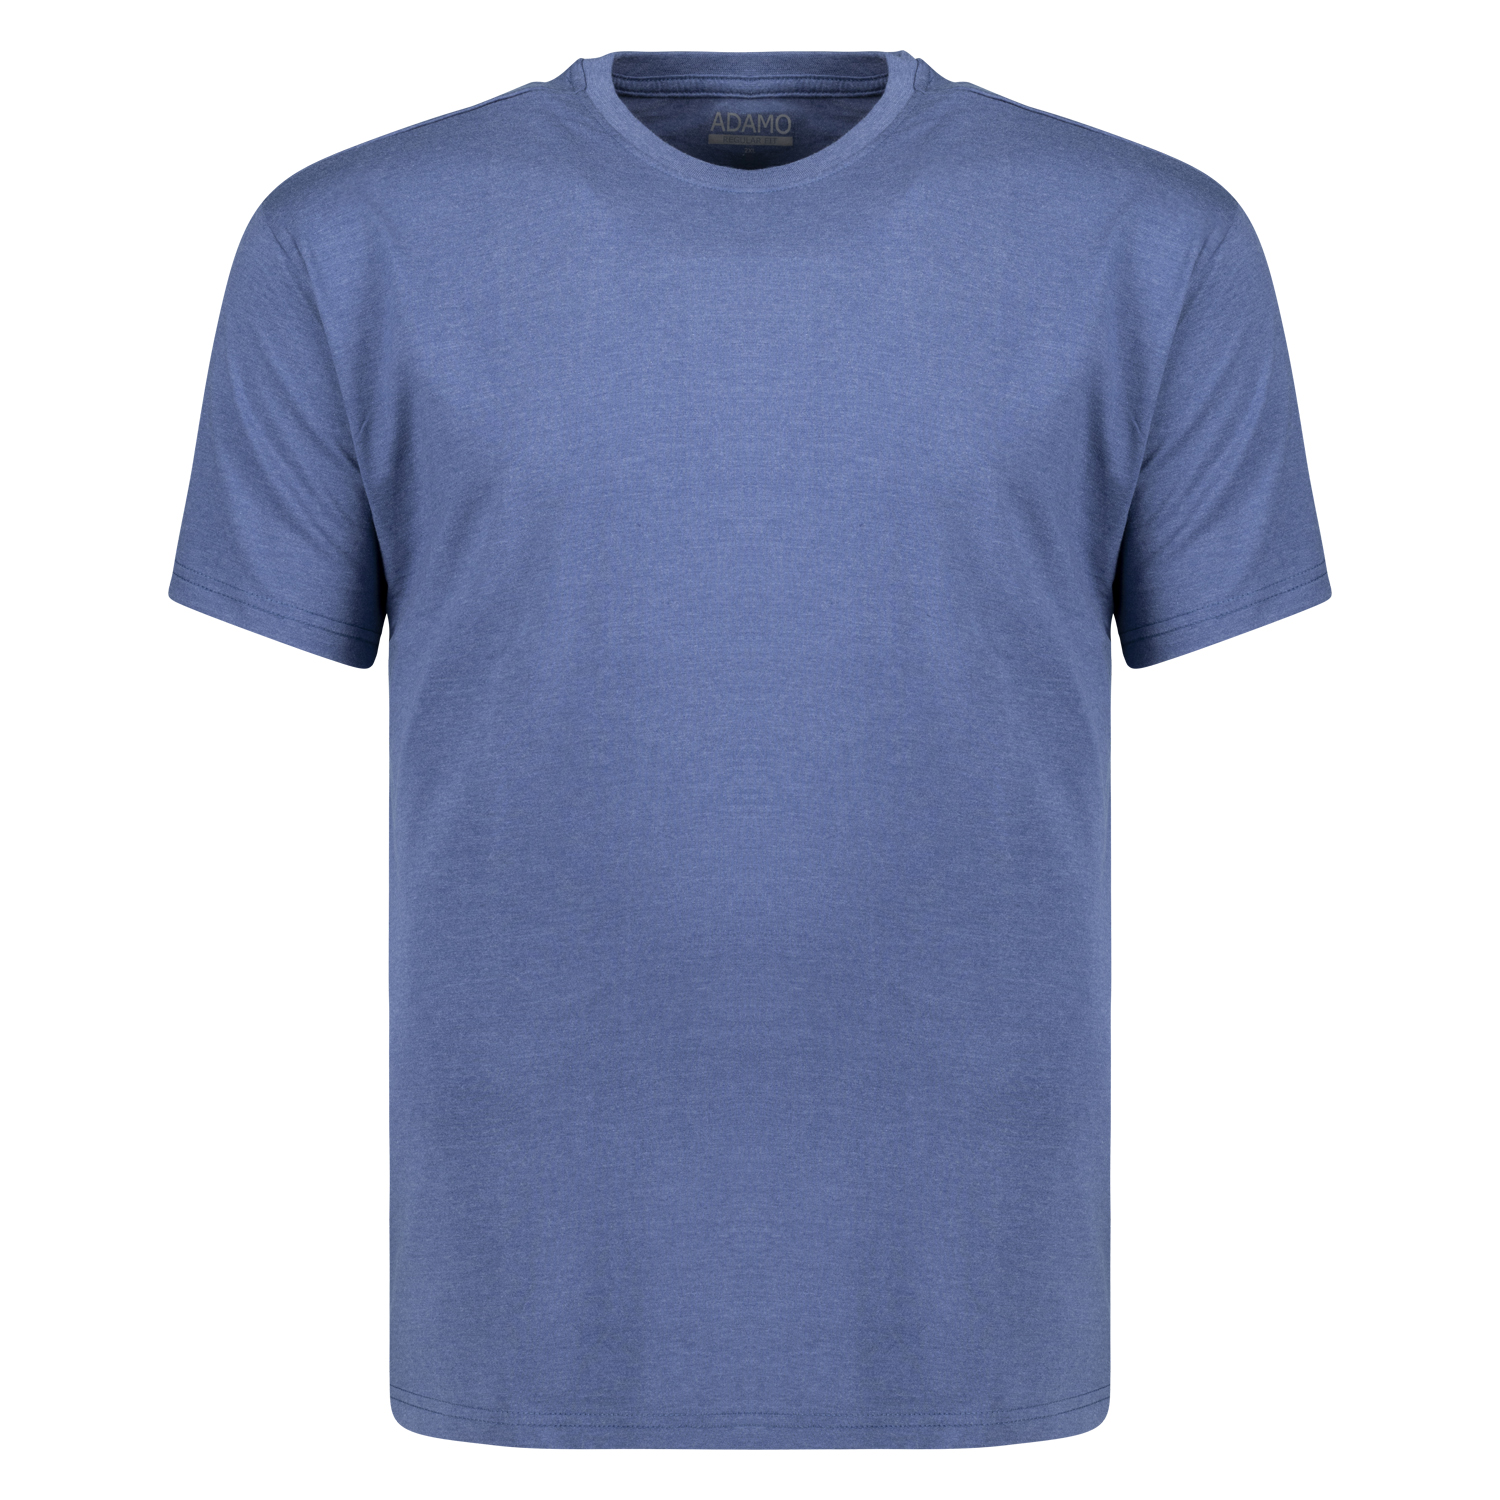 T-shirt série KEVIN by ADAMO jusqu'à la grande taille 12XL - couleur: bleu jeans chiné